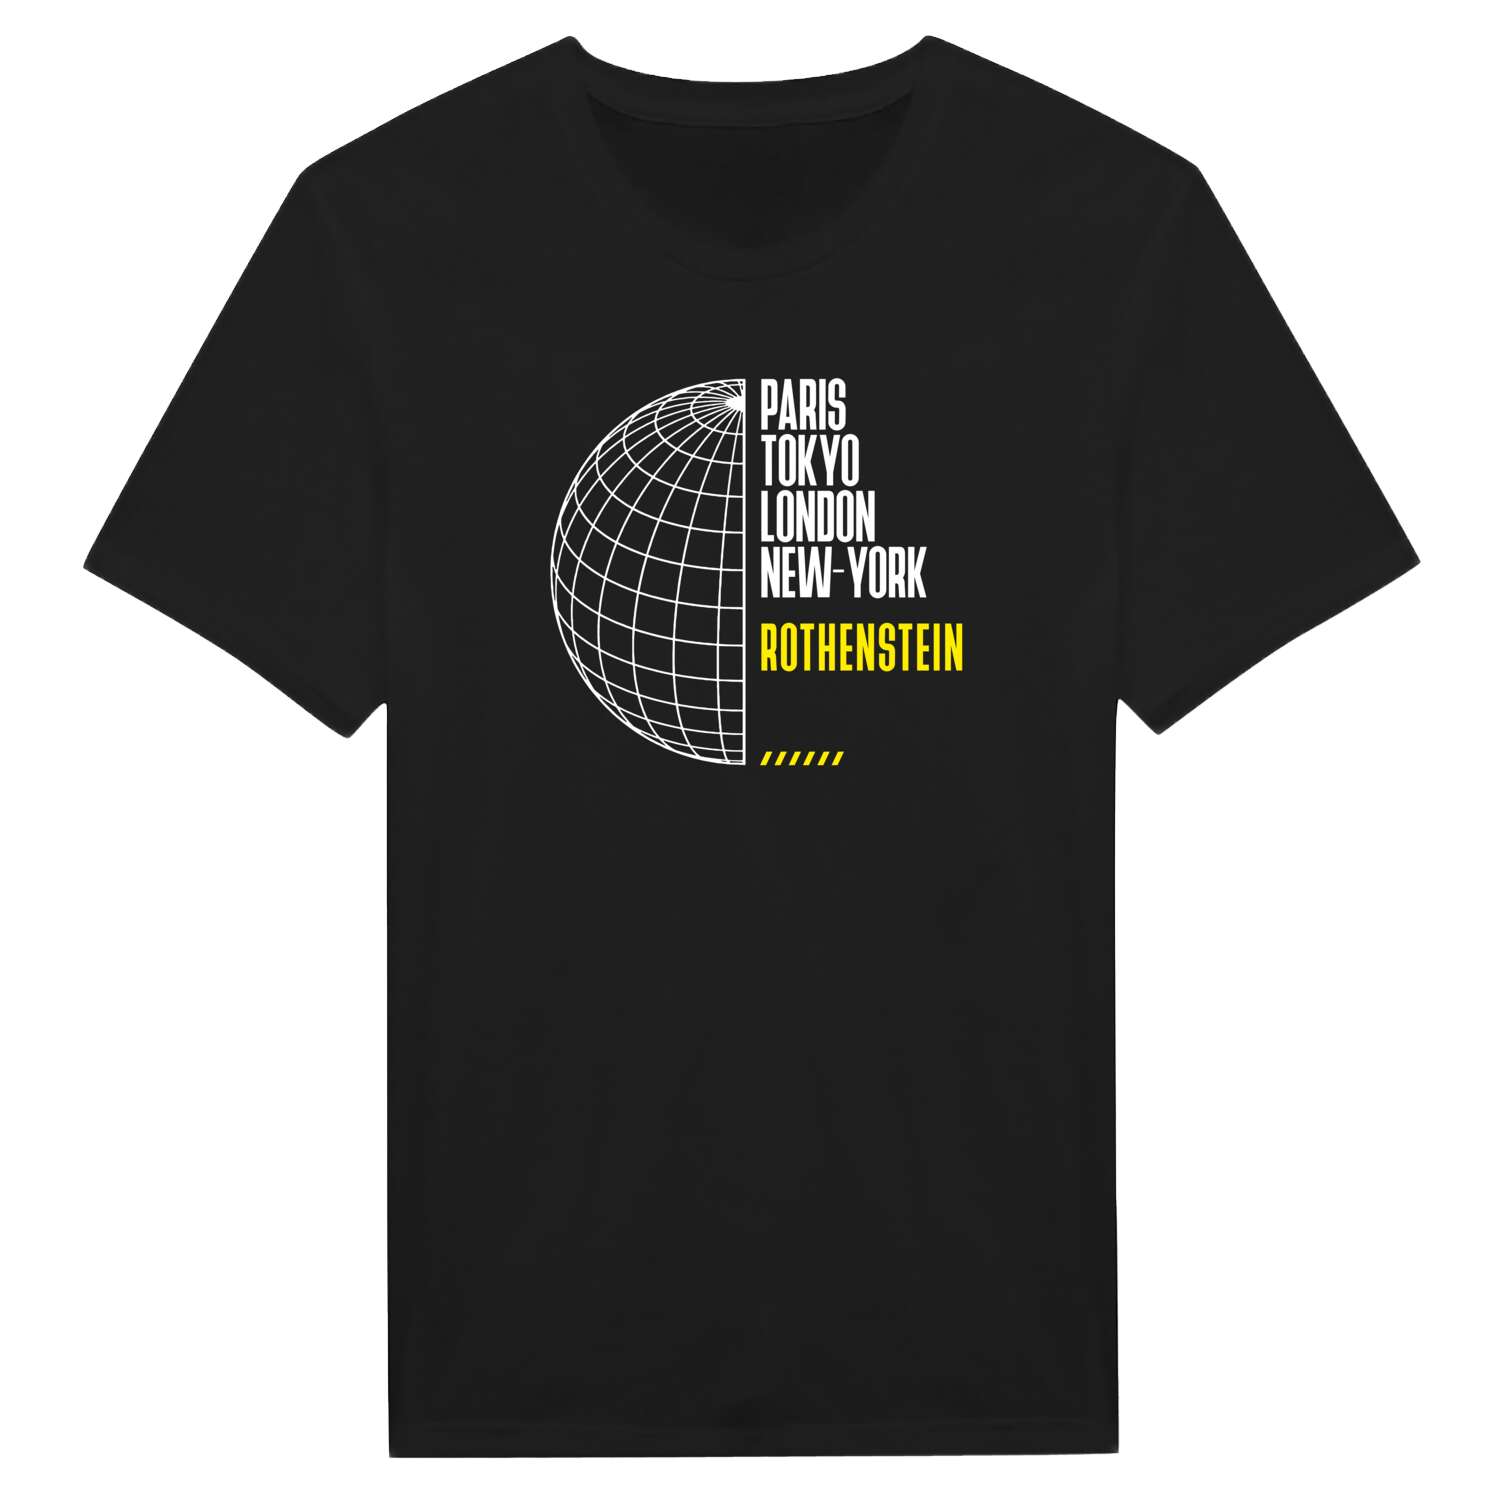 Rothenstein T-Shirt »Paris Tokyo London«